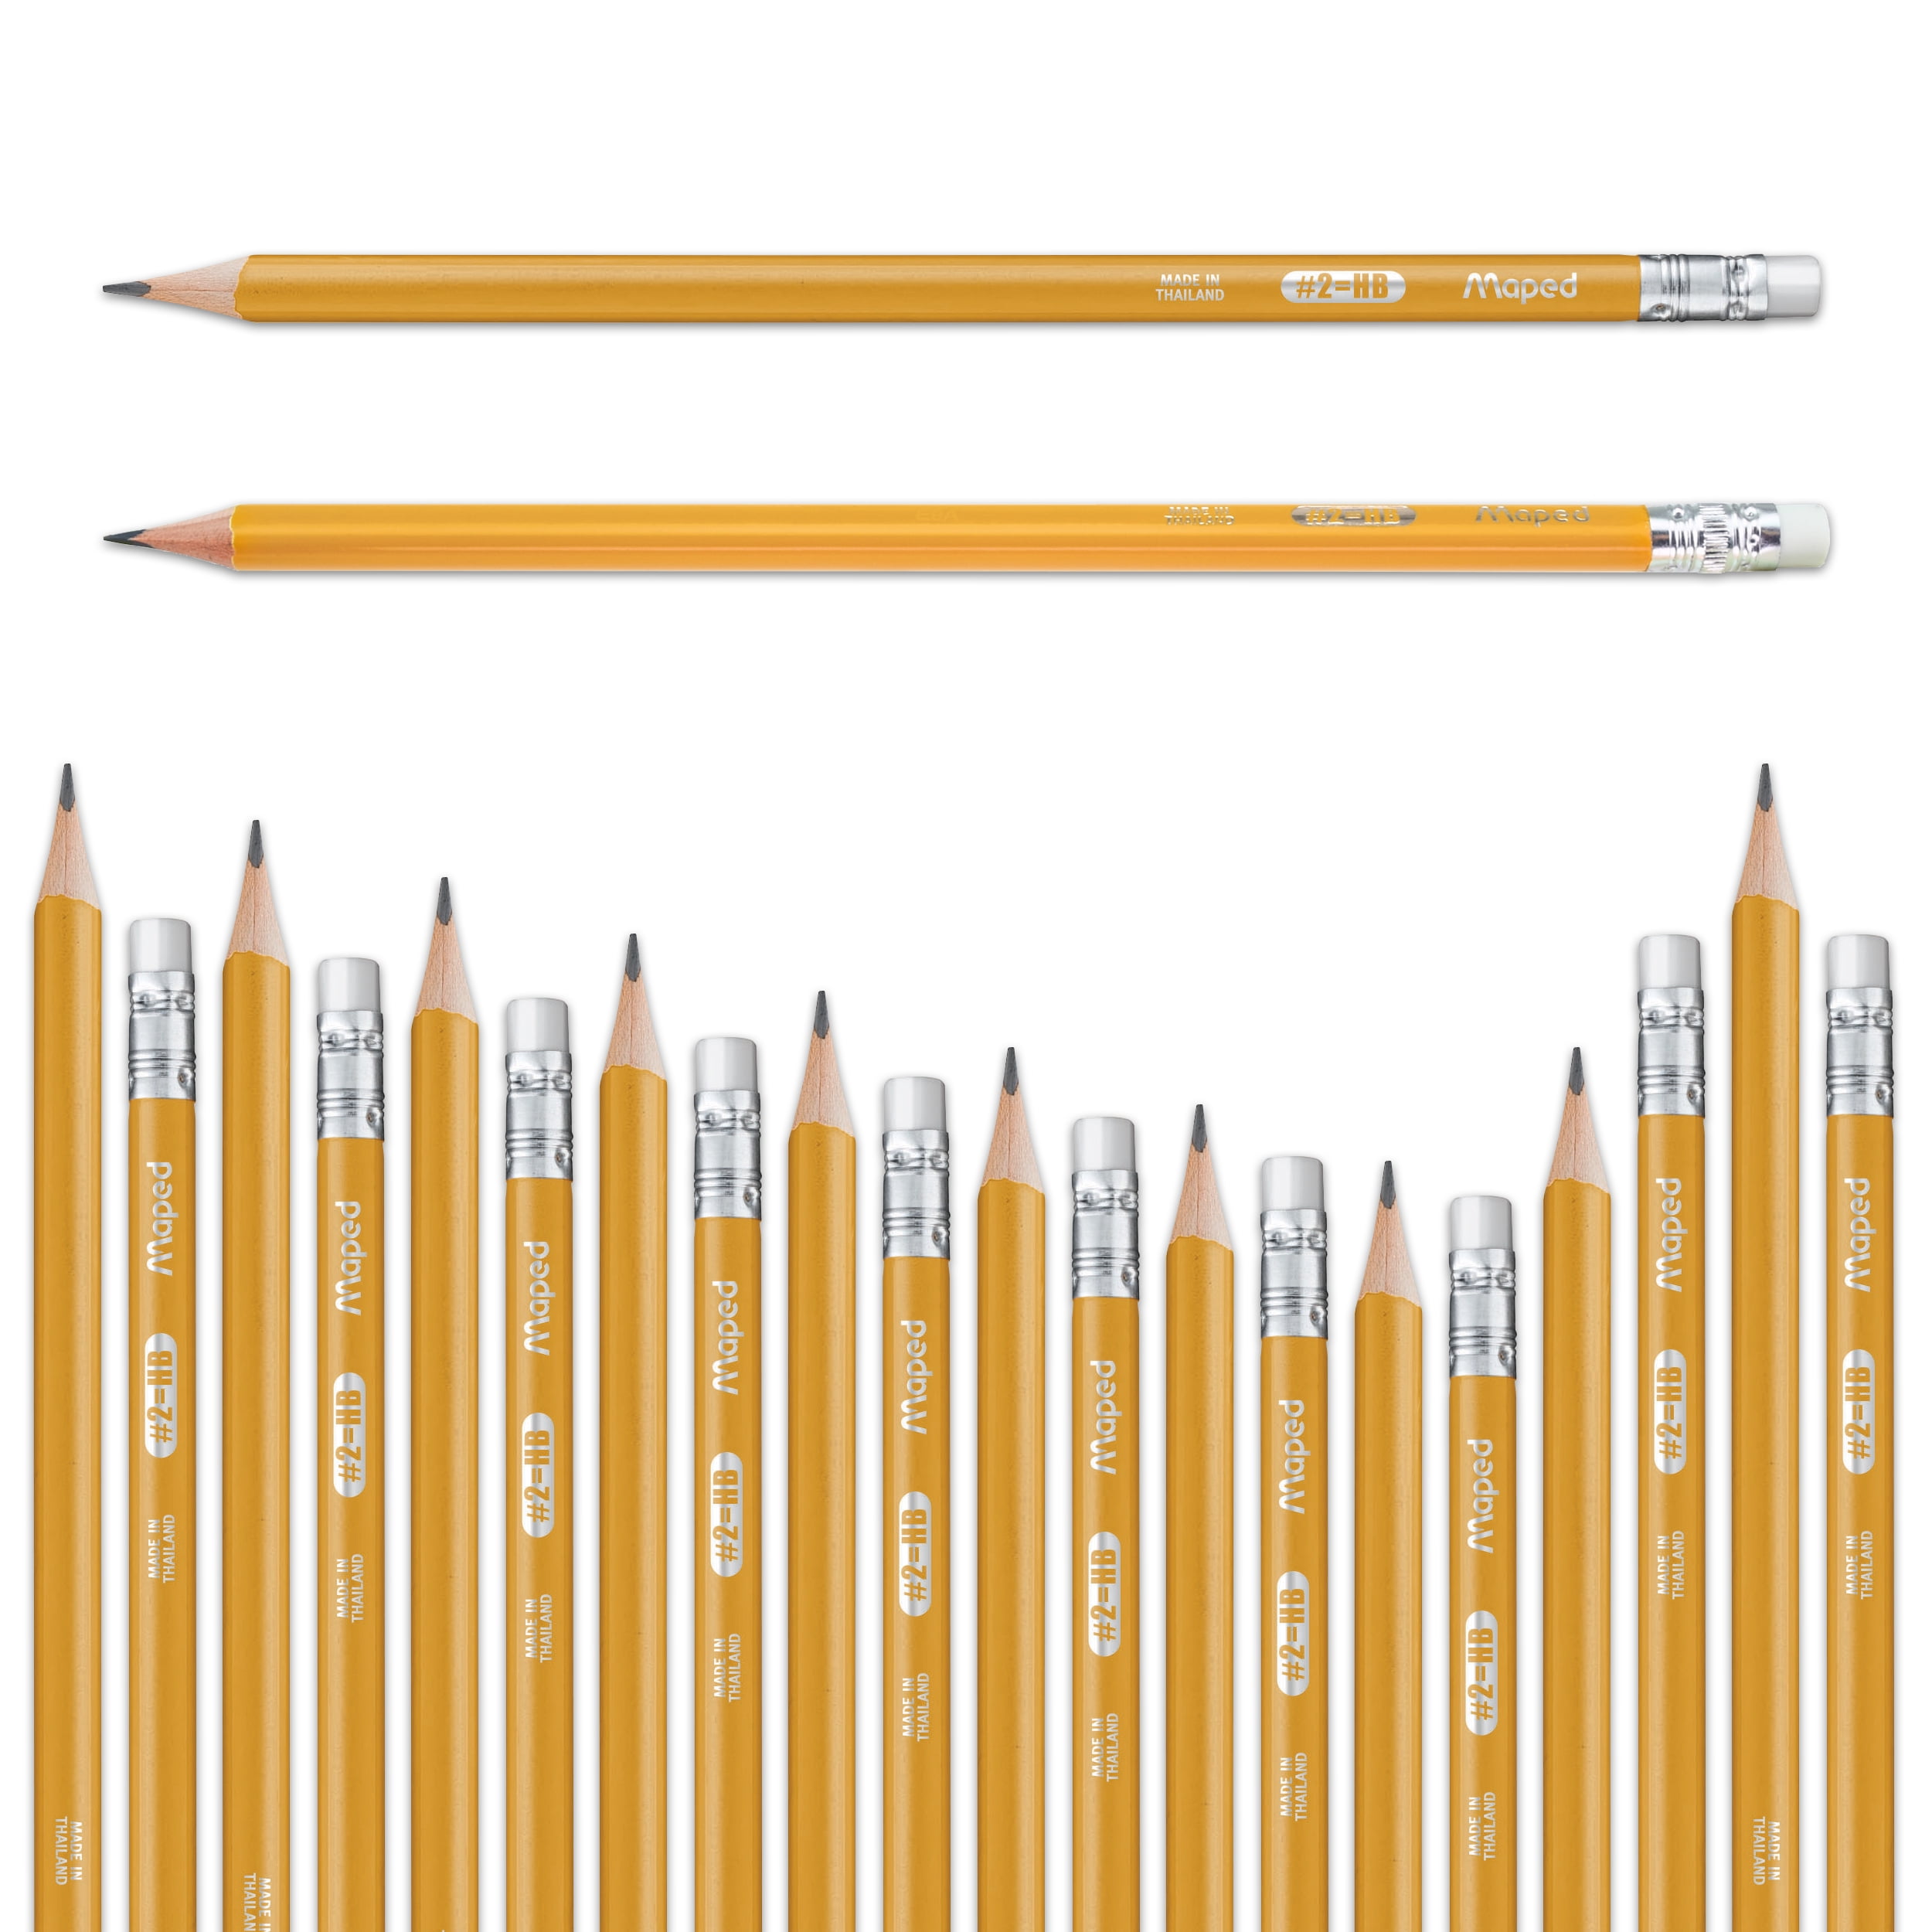 .com : Pasler® Colorless Blender Pencils - Professional